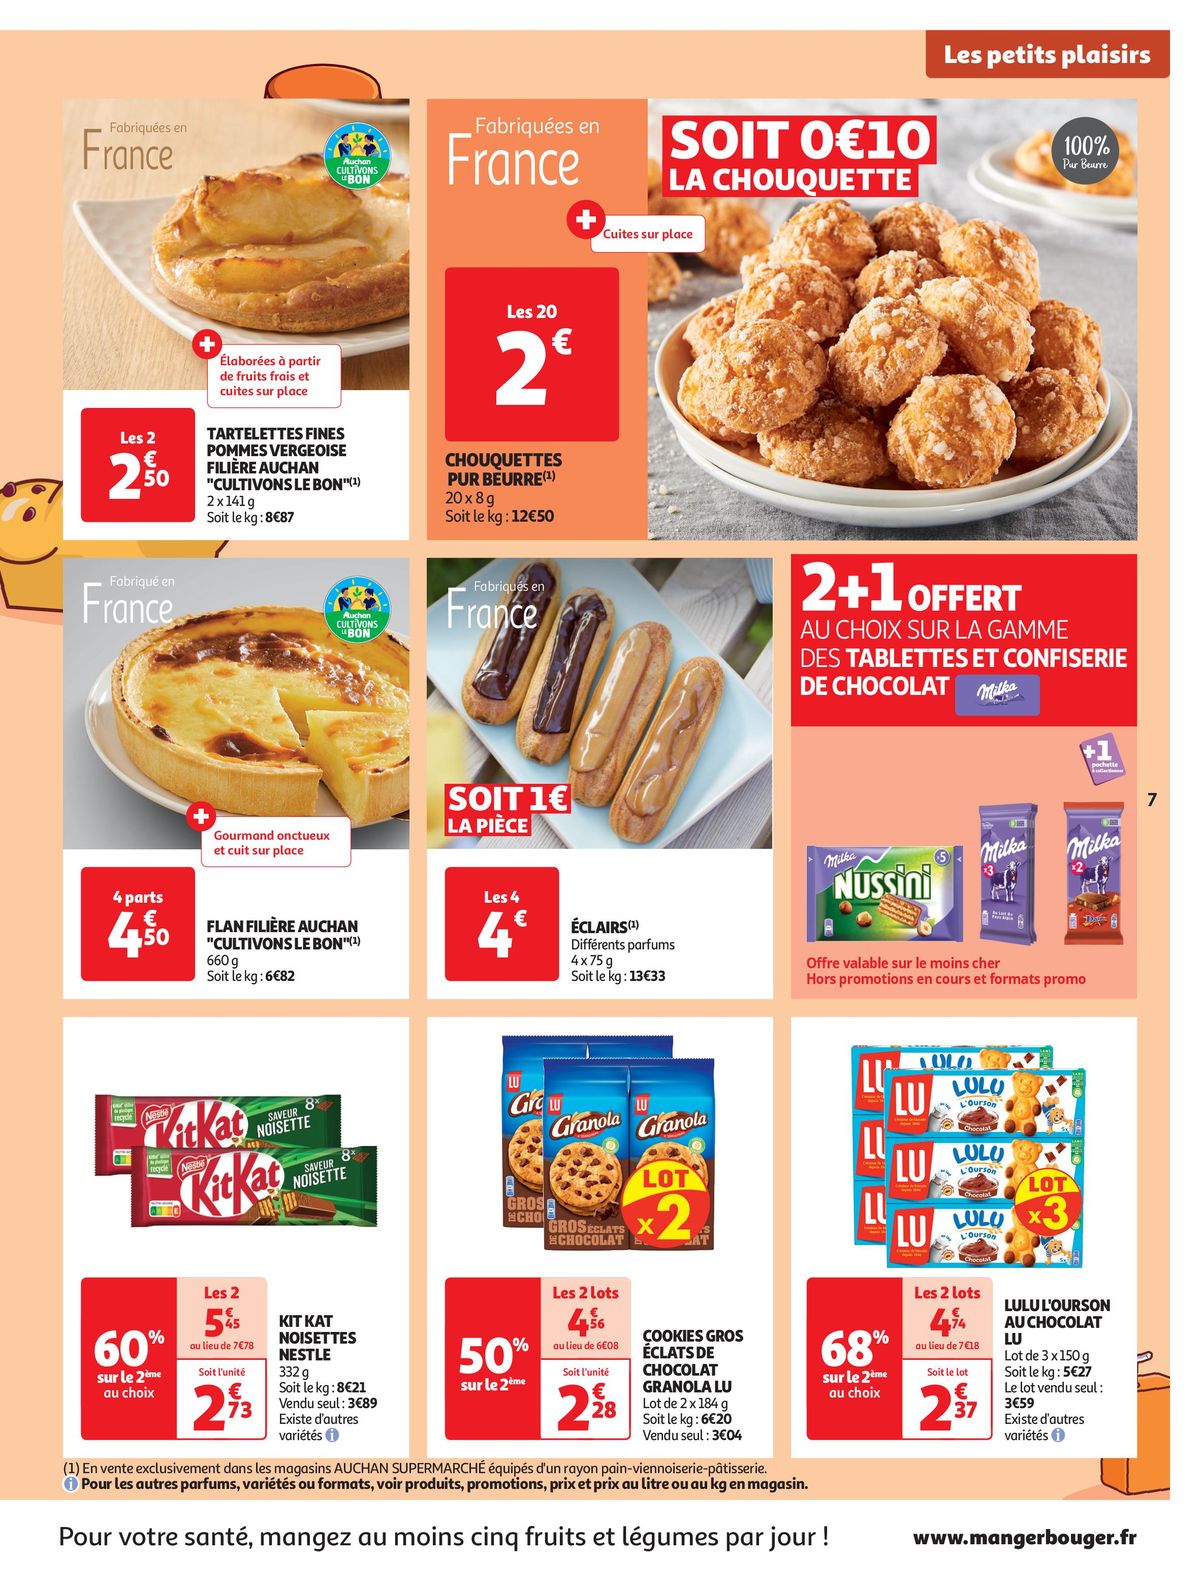 Catalogue Spécial Cuisine Gourmane dans votre supermarché, page 00007